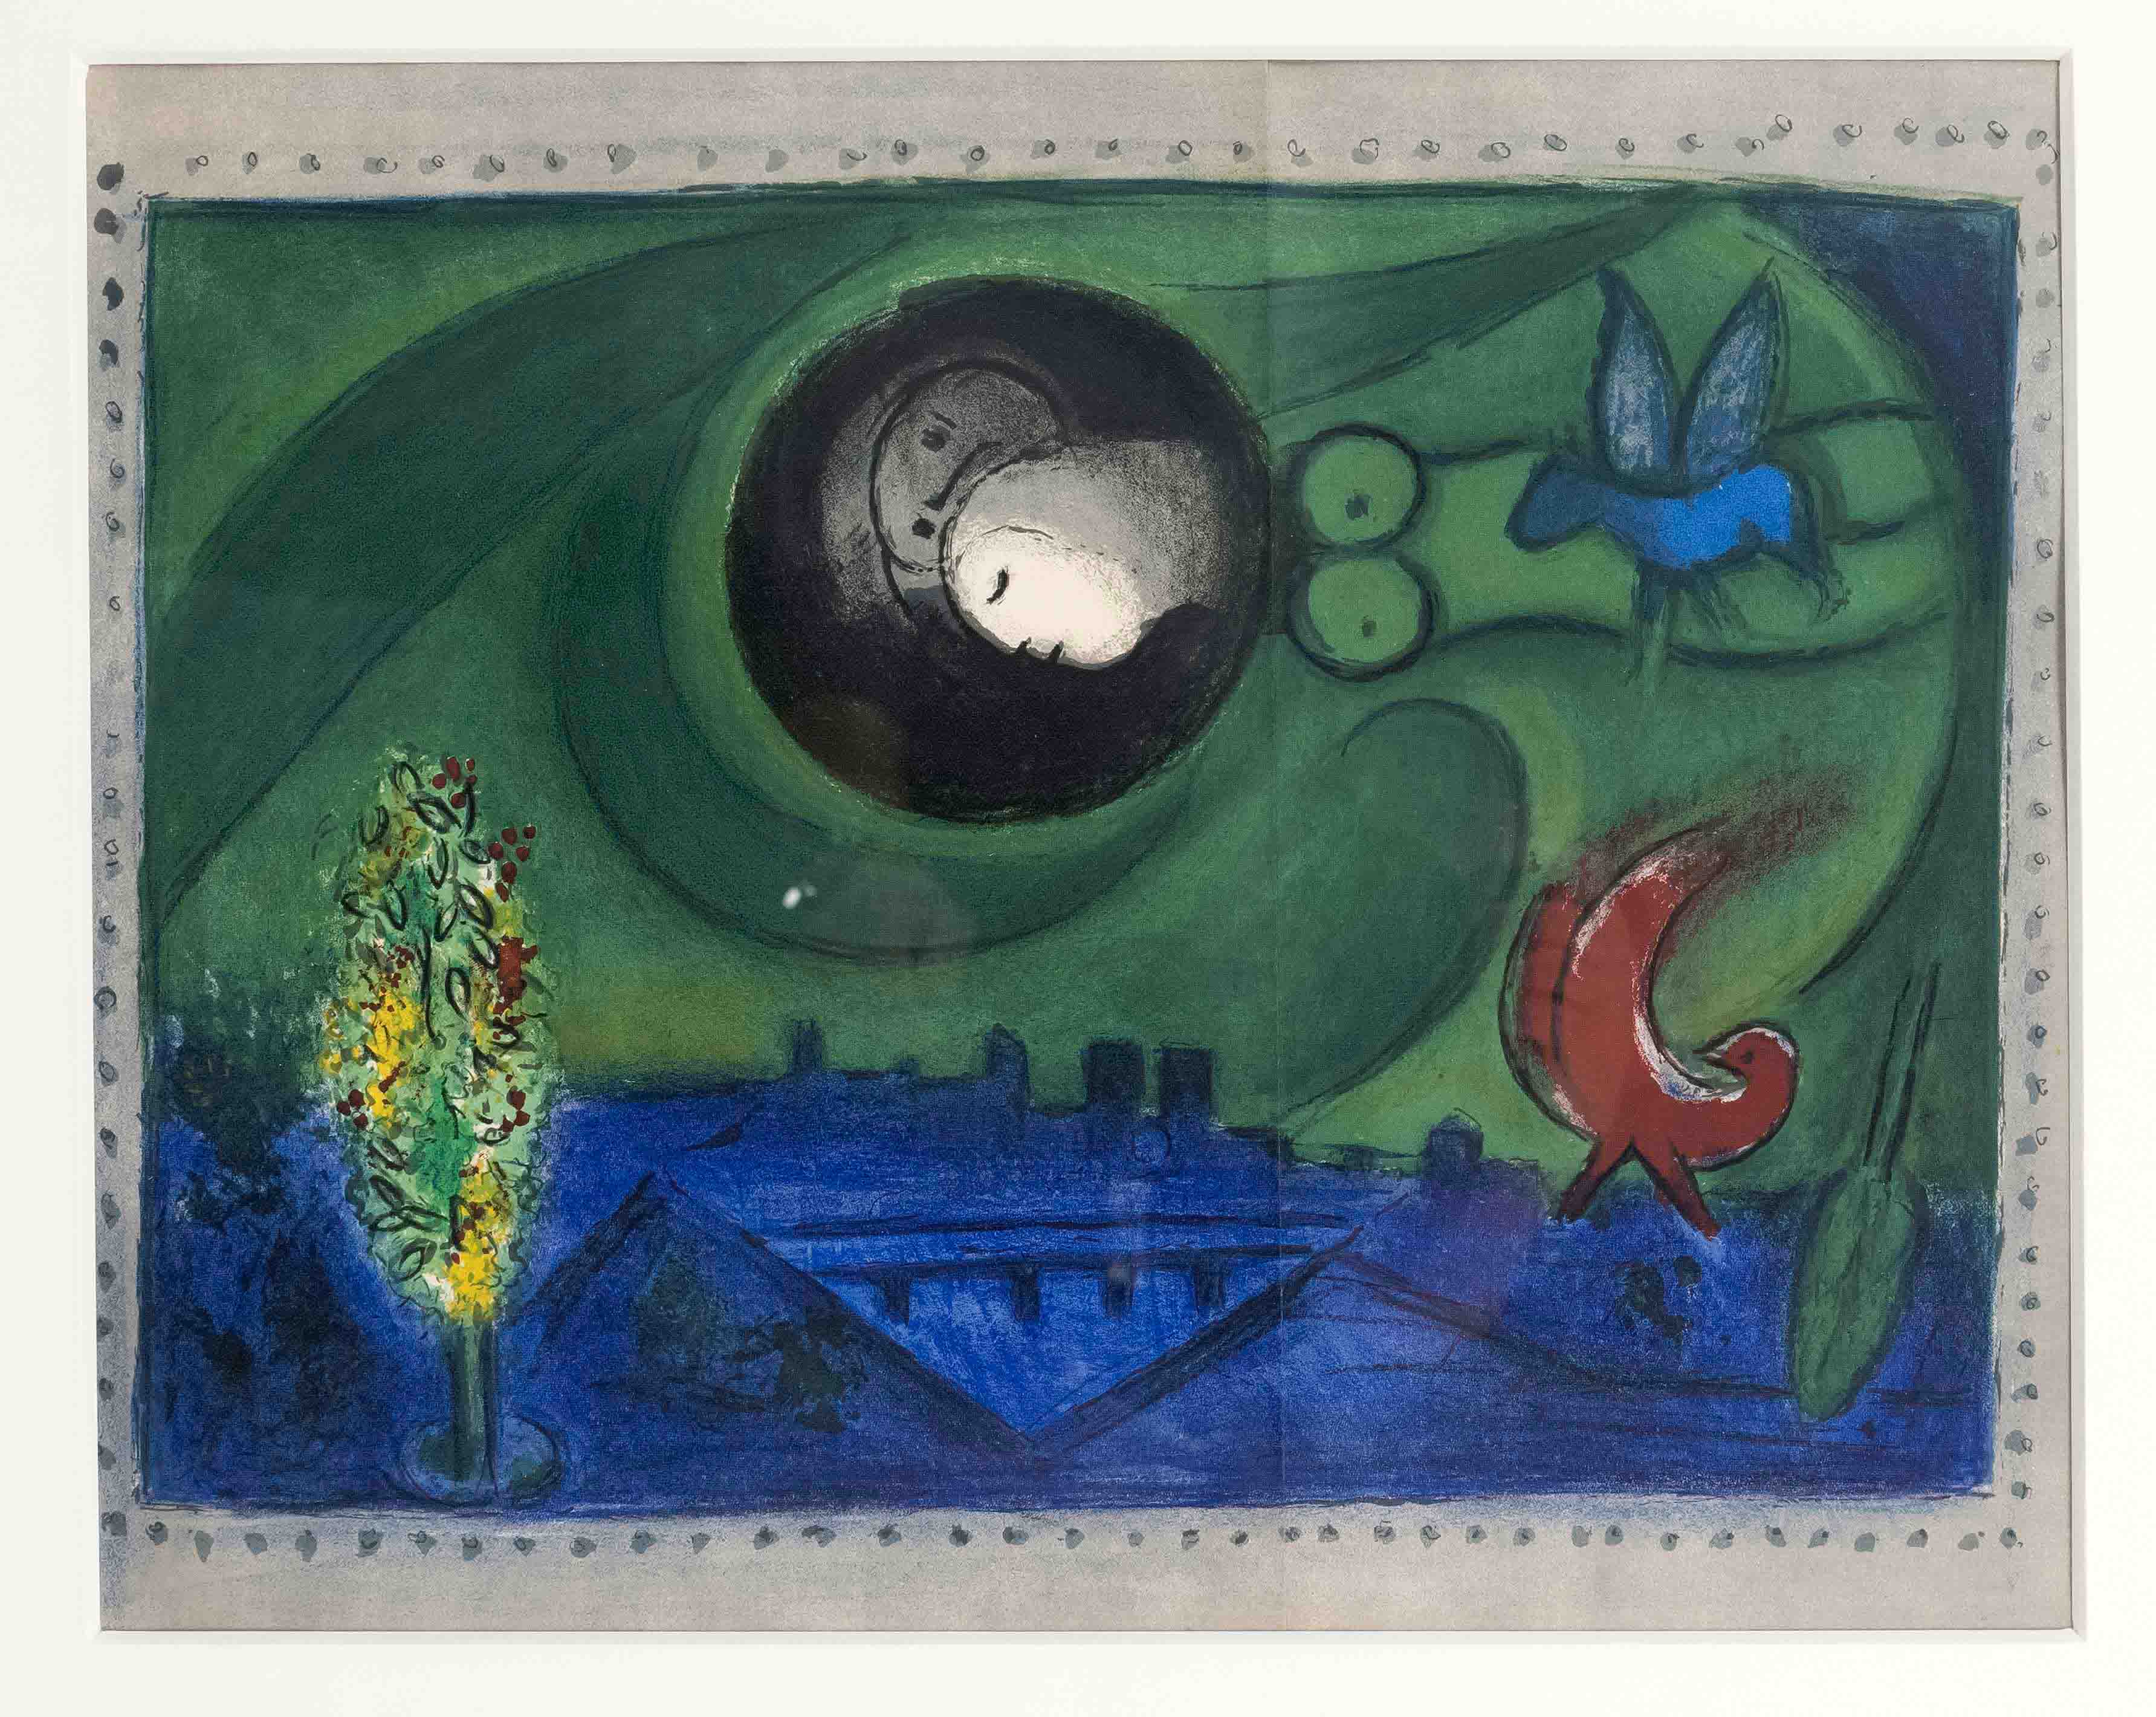 Chagall, Marc. 1878 Vitebsk - 1985 St.-Paul-de-Vence. Quai de Bercy. 1954. color lithograph from